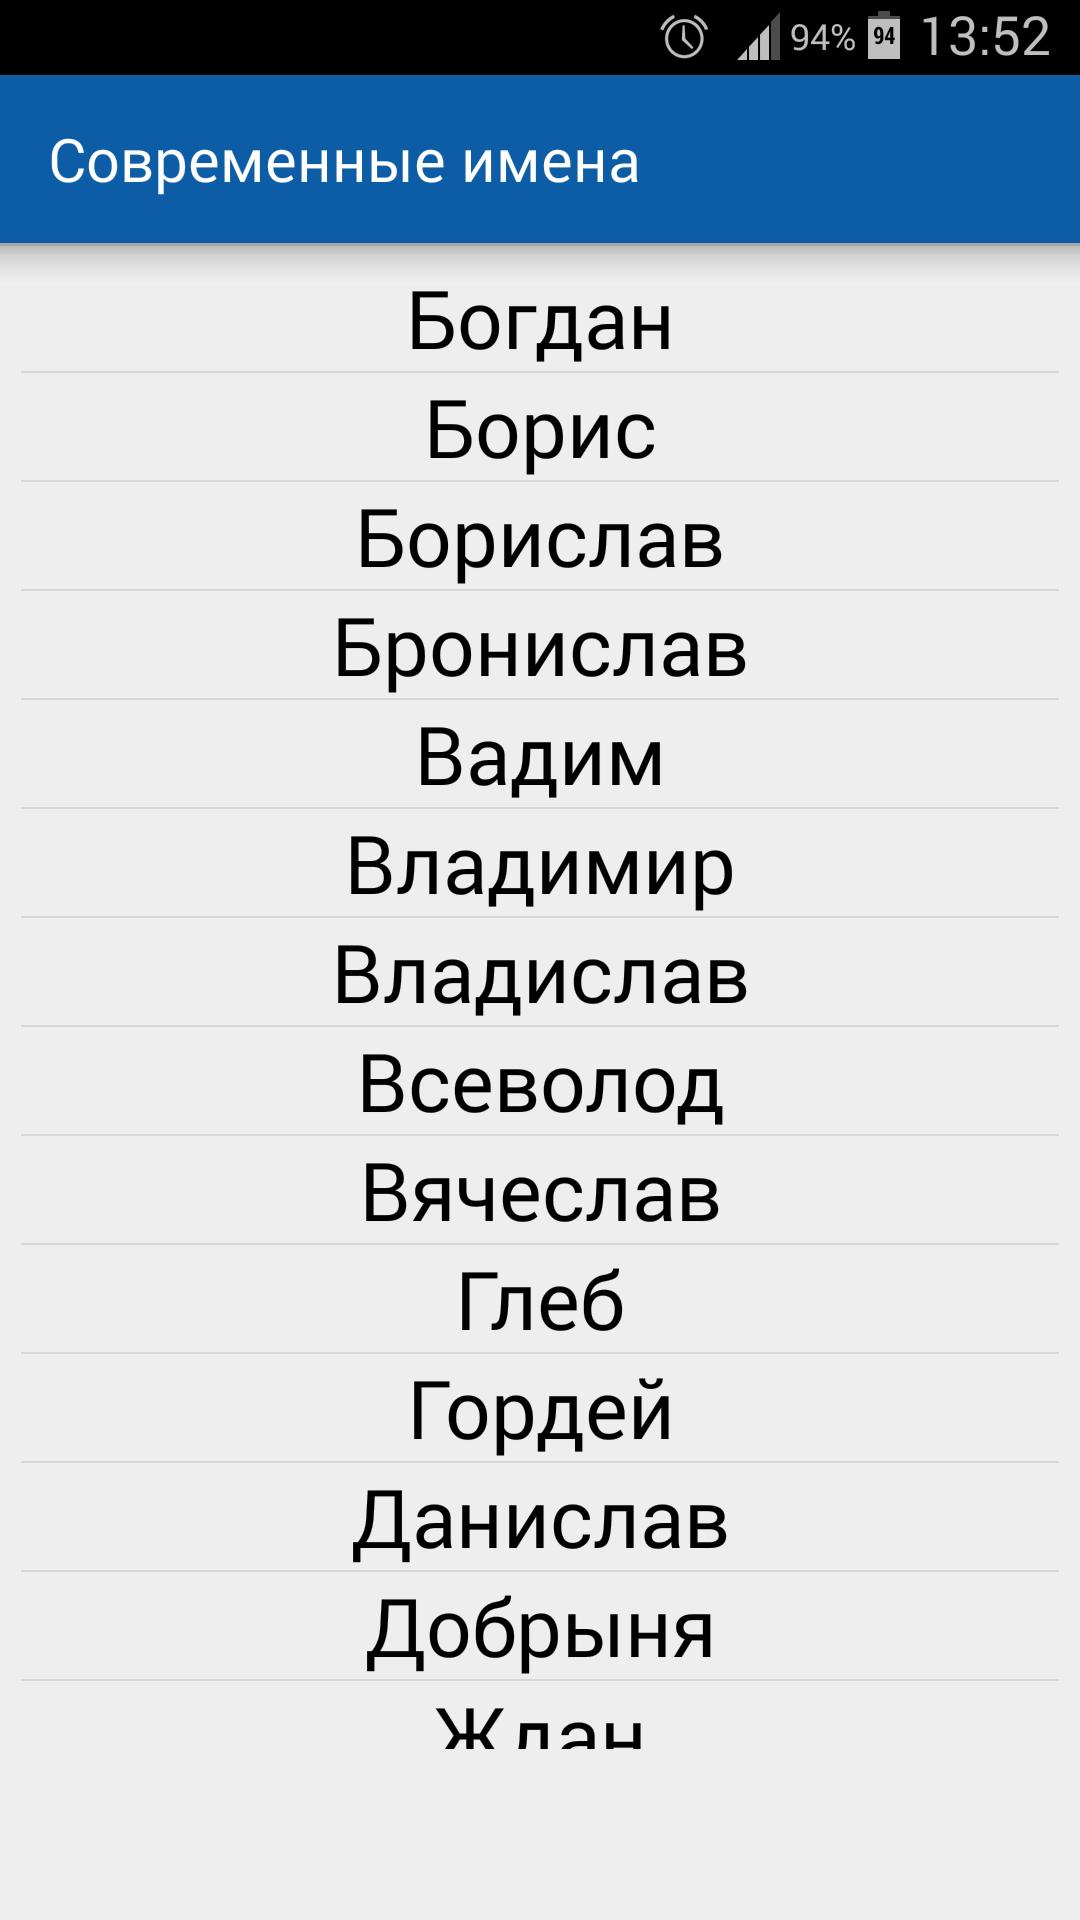 Перевод таджикских имен